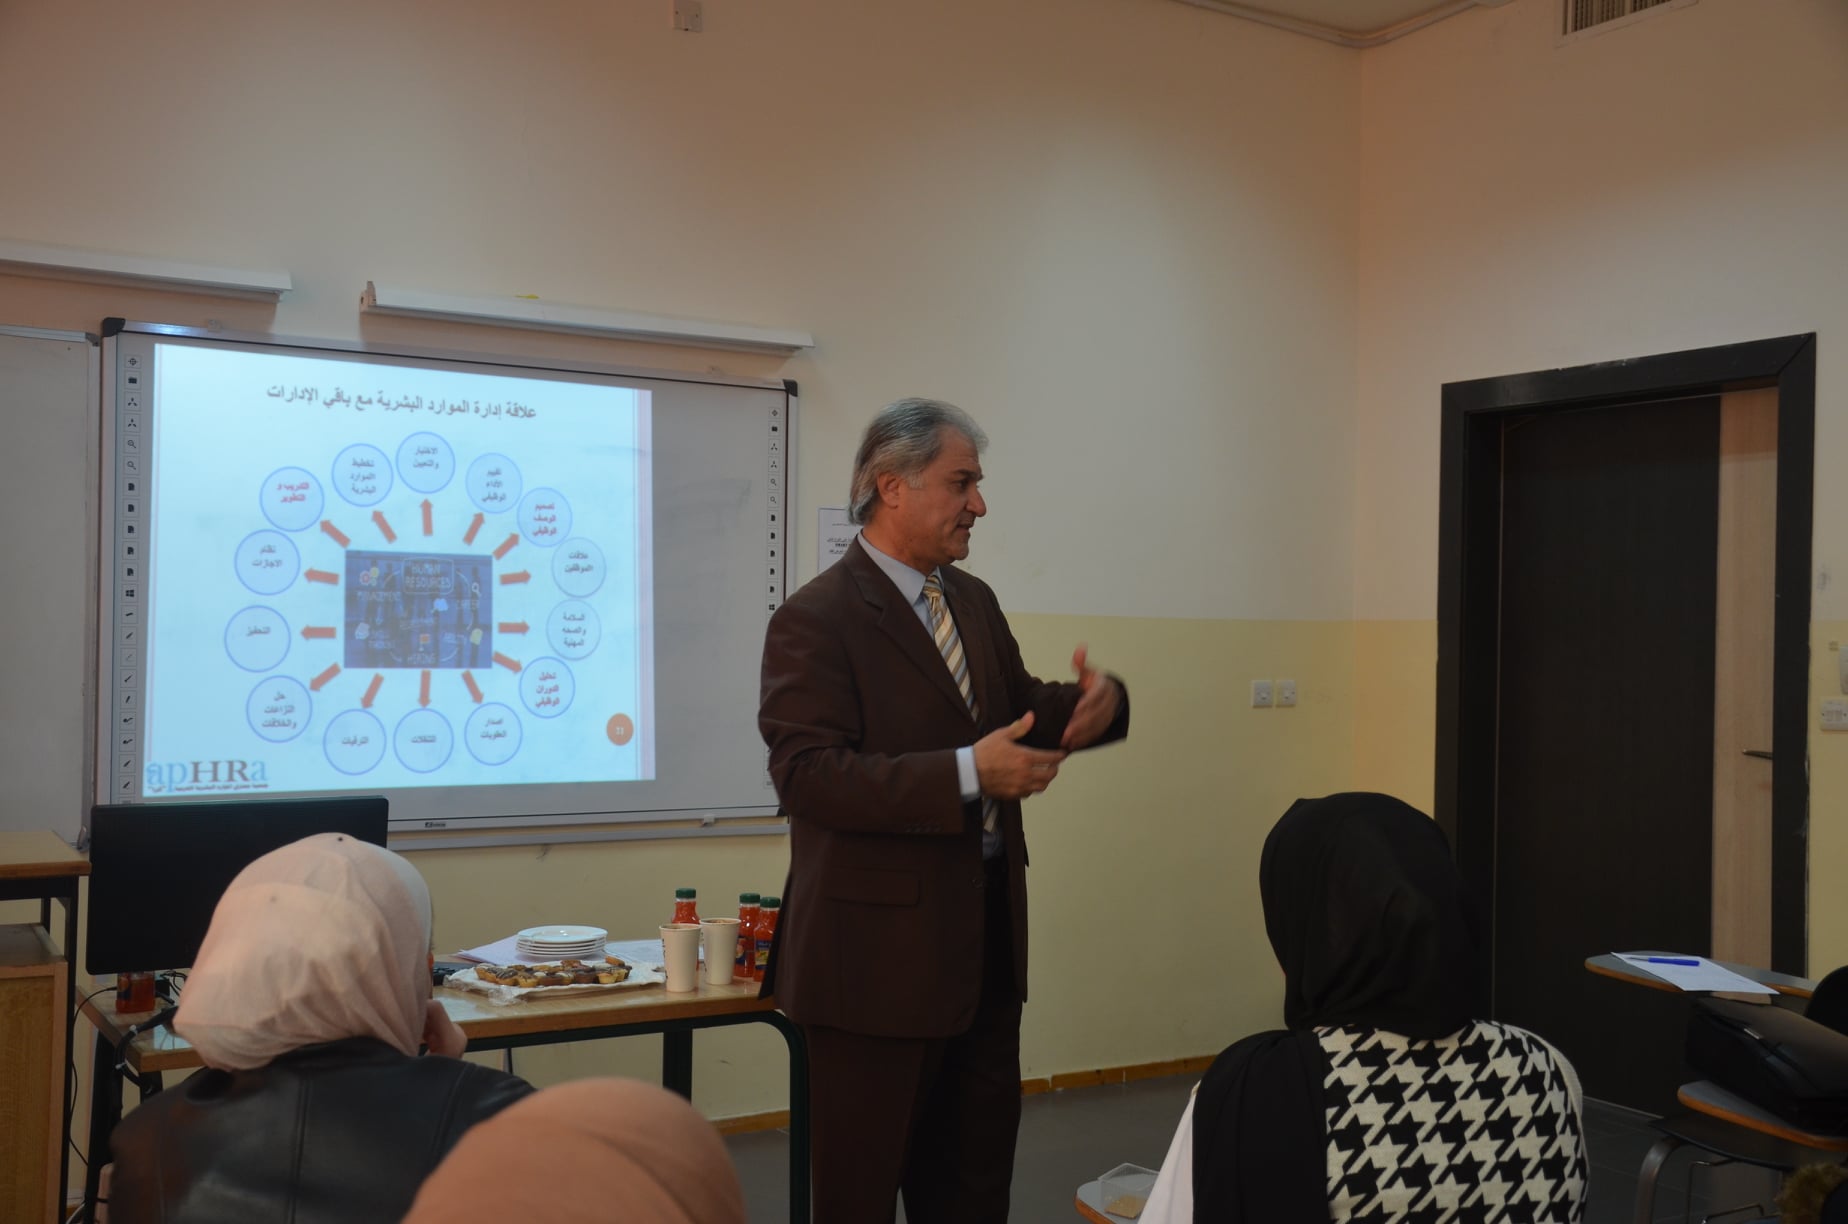 ورشة في إدارة الموارد البشرية بالتعاون ما بين "عمان العربية" وجمعية أفرا2